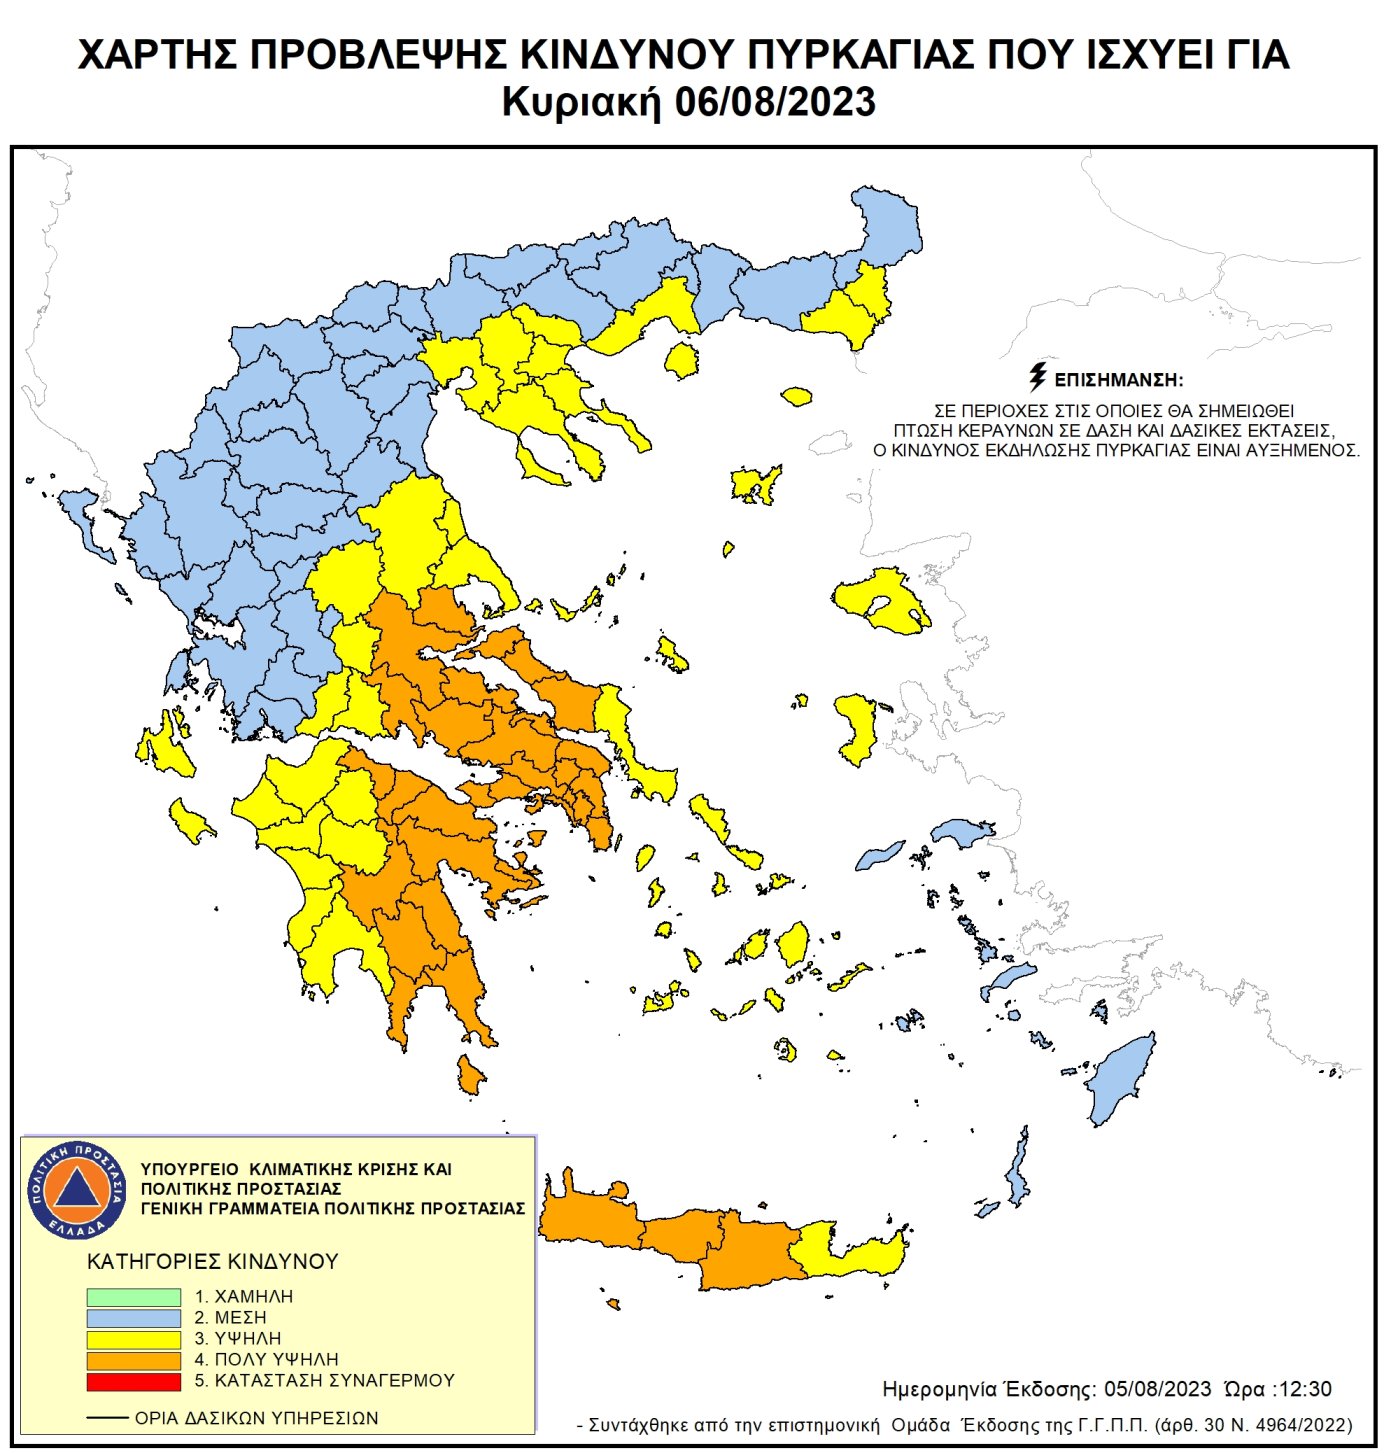 Κρήτη: Πολύ υψηλός ο κίνδυνος εκδήλωσης πυρκαγιάς την Κυριακή σε Χανιά, Ρέθυμνο, Ηράκλειο